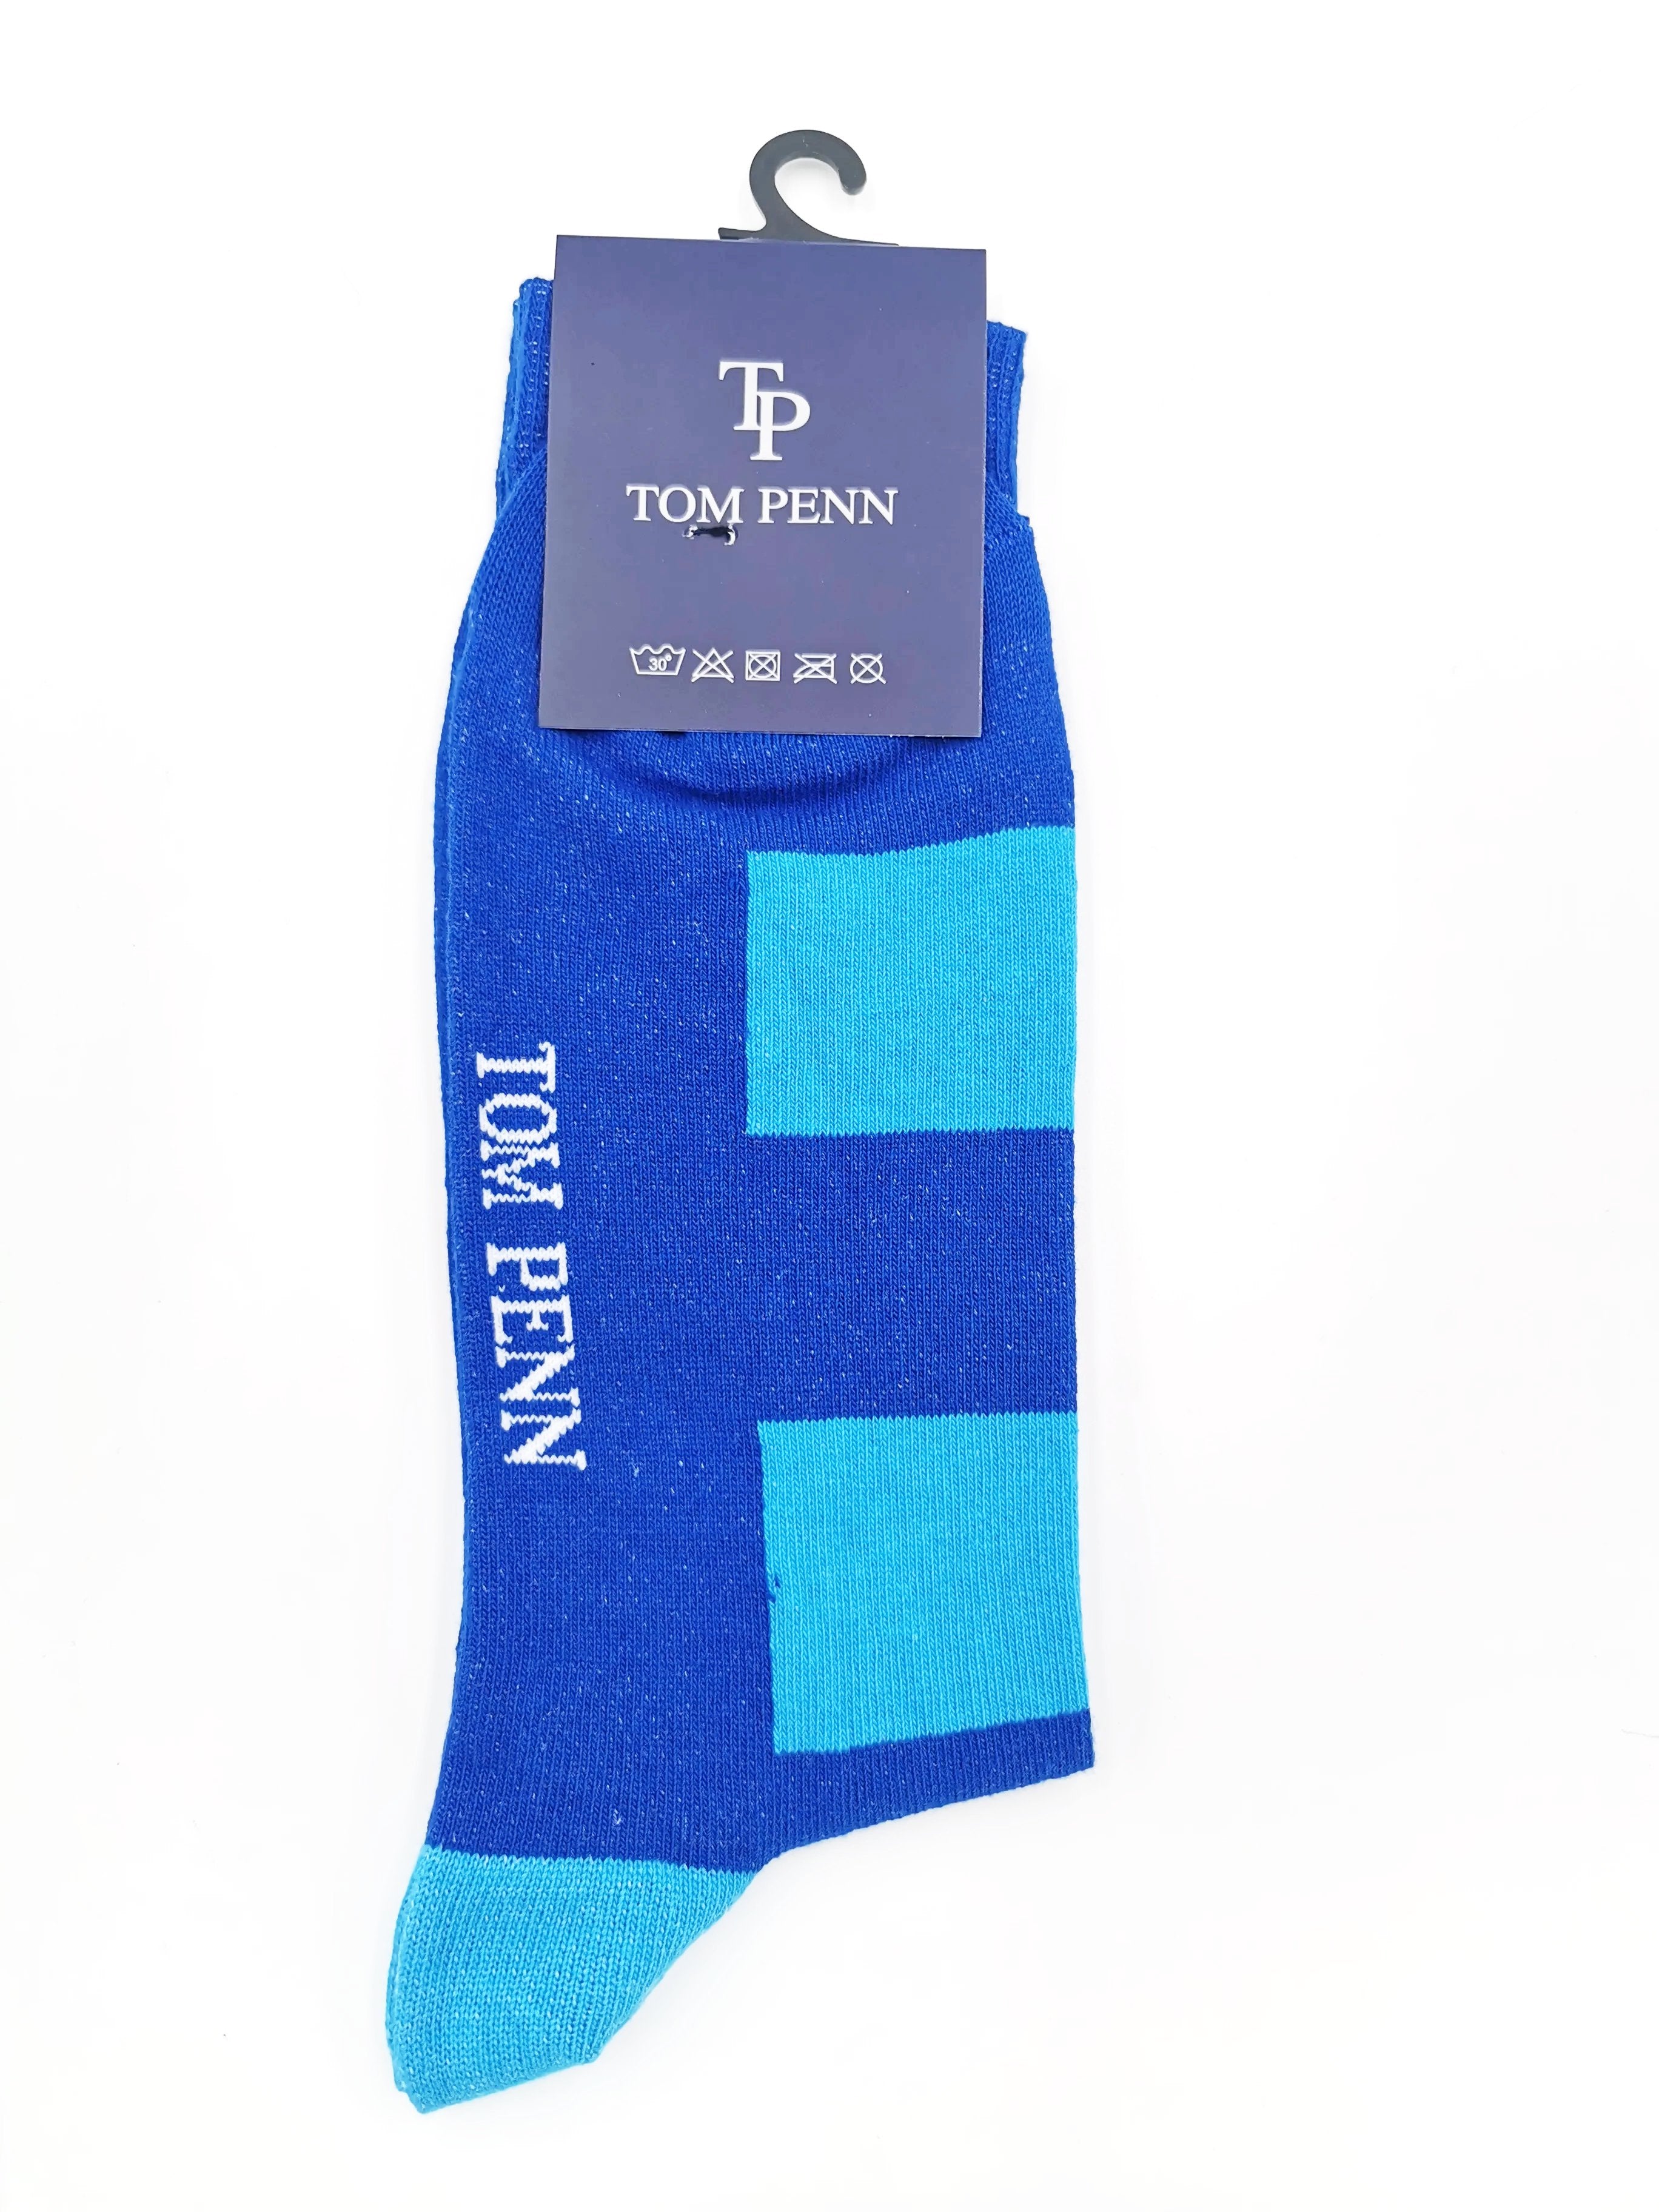 Tom Penn Royal Blue Turquoise Stripe sock.